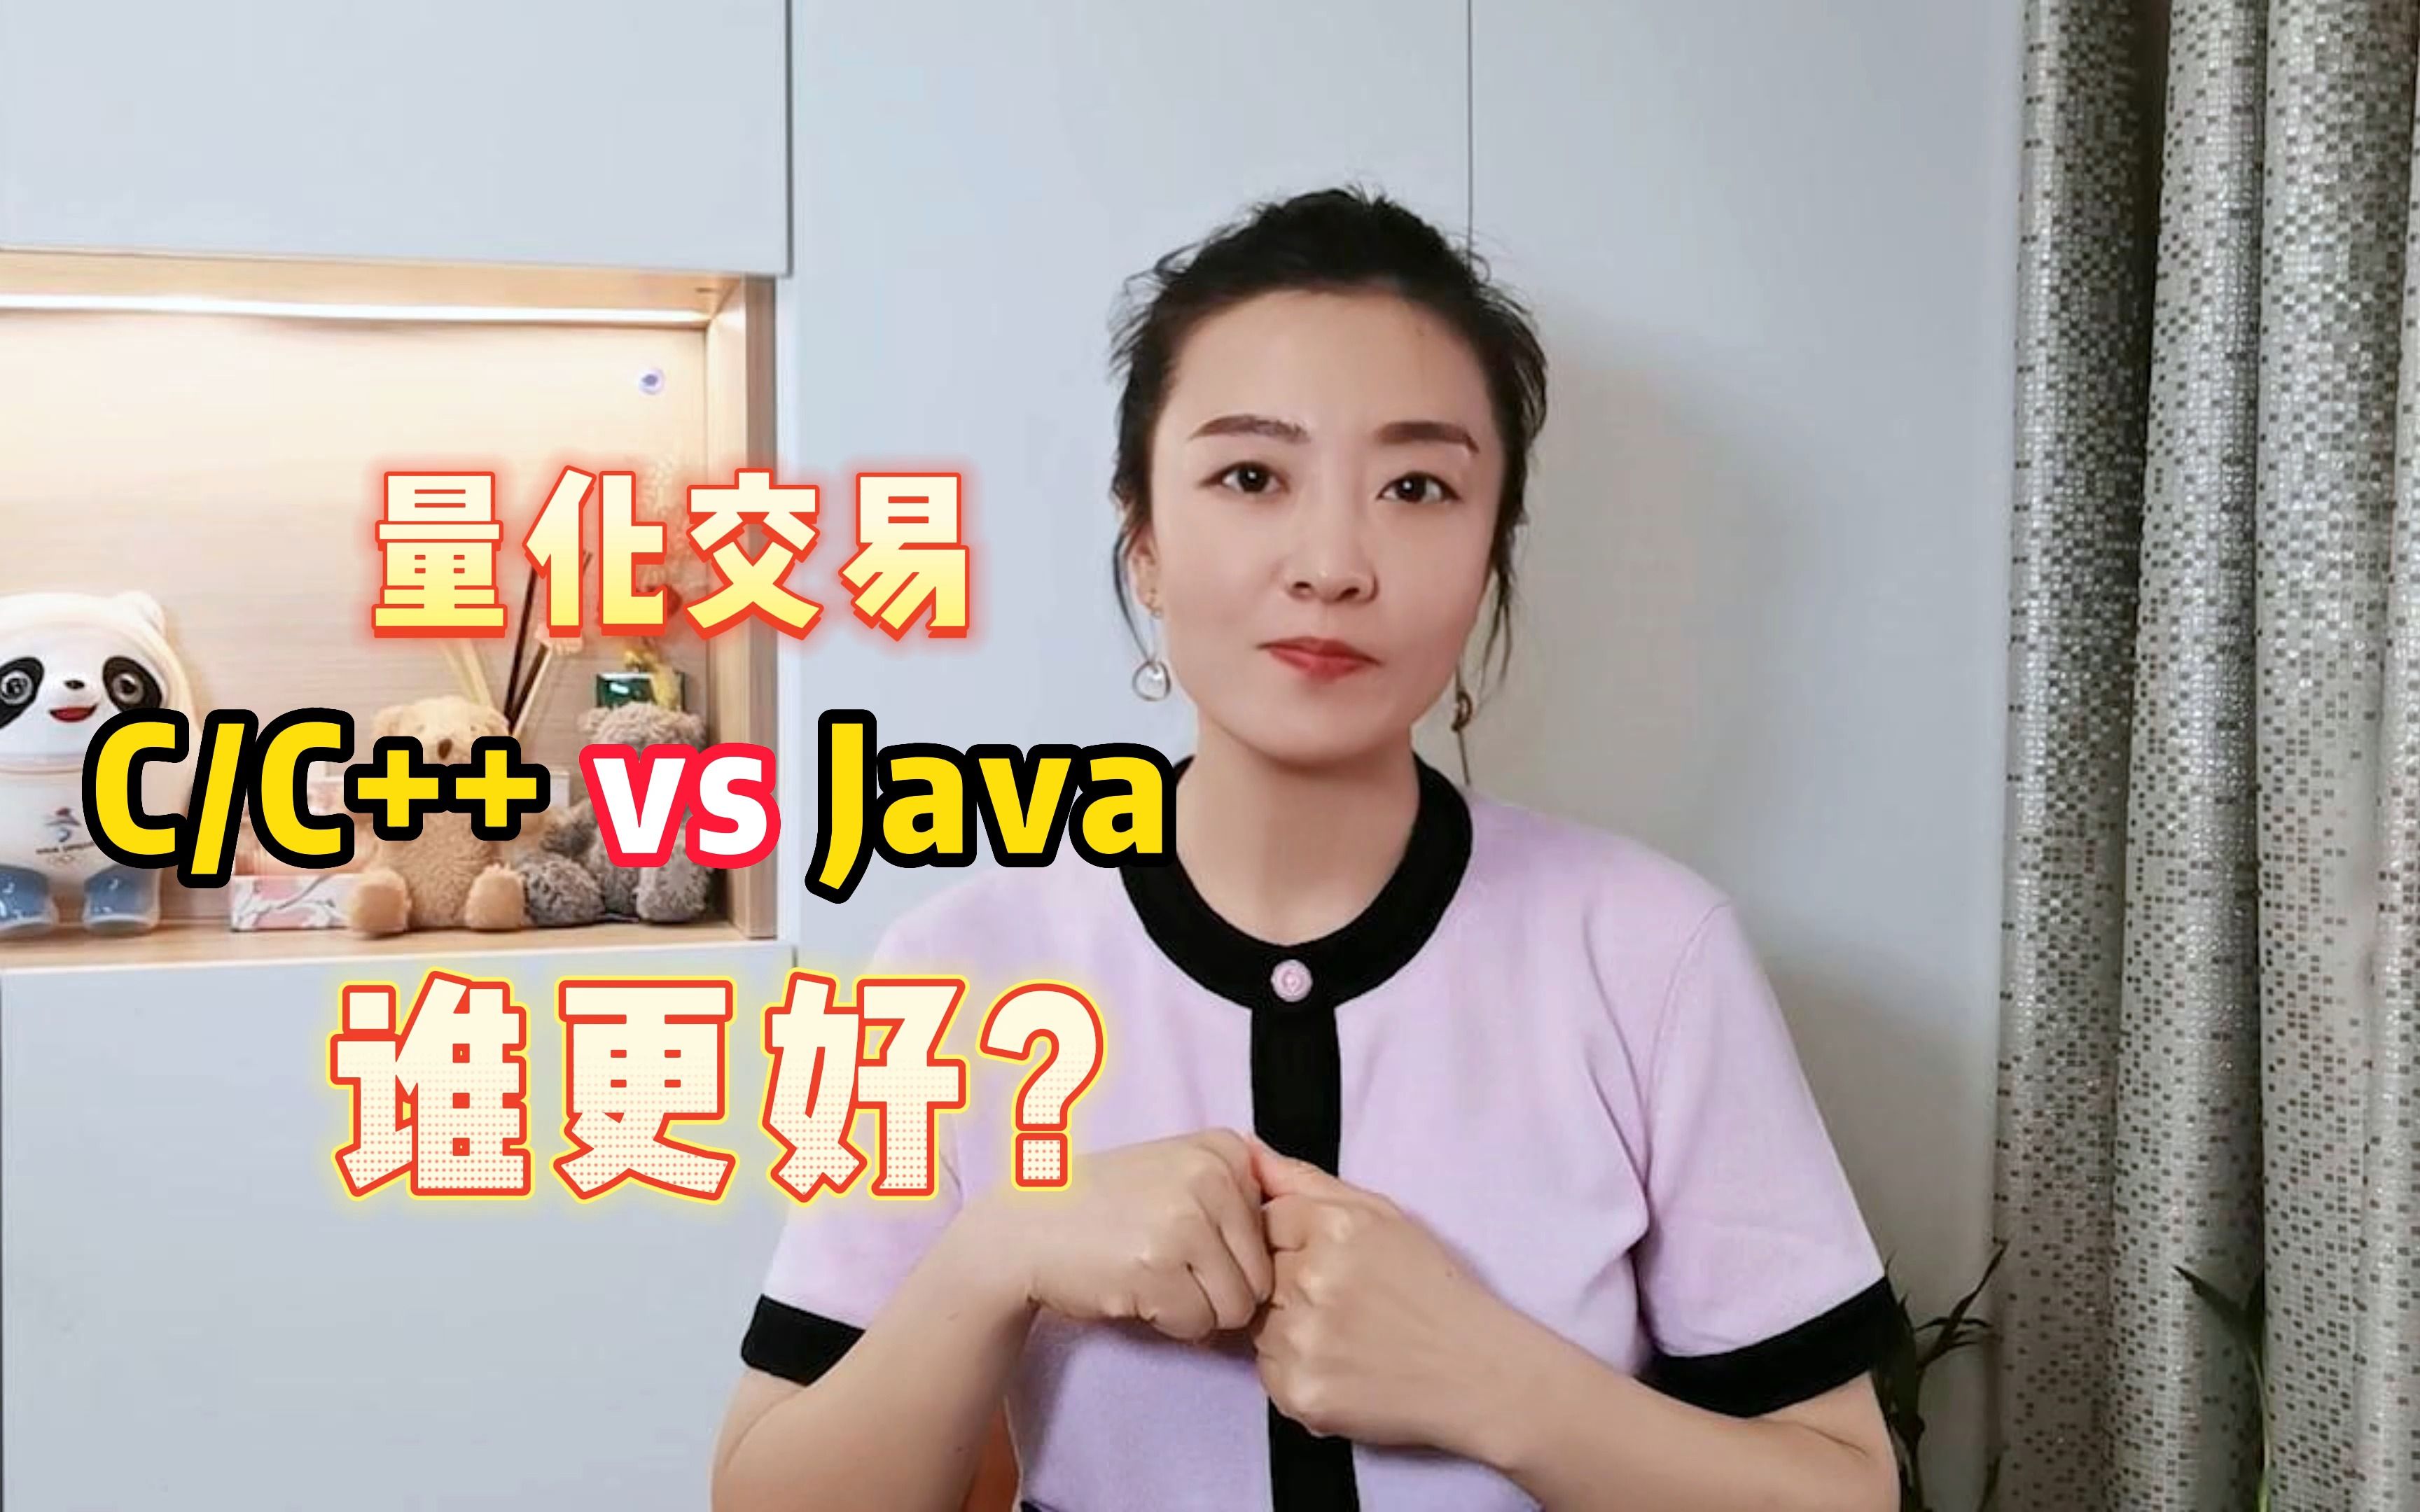 量化交易需求，使用CC++还是Java，哪个更好用？